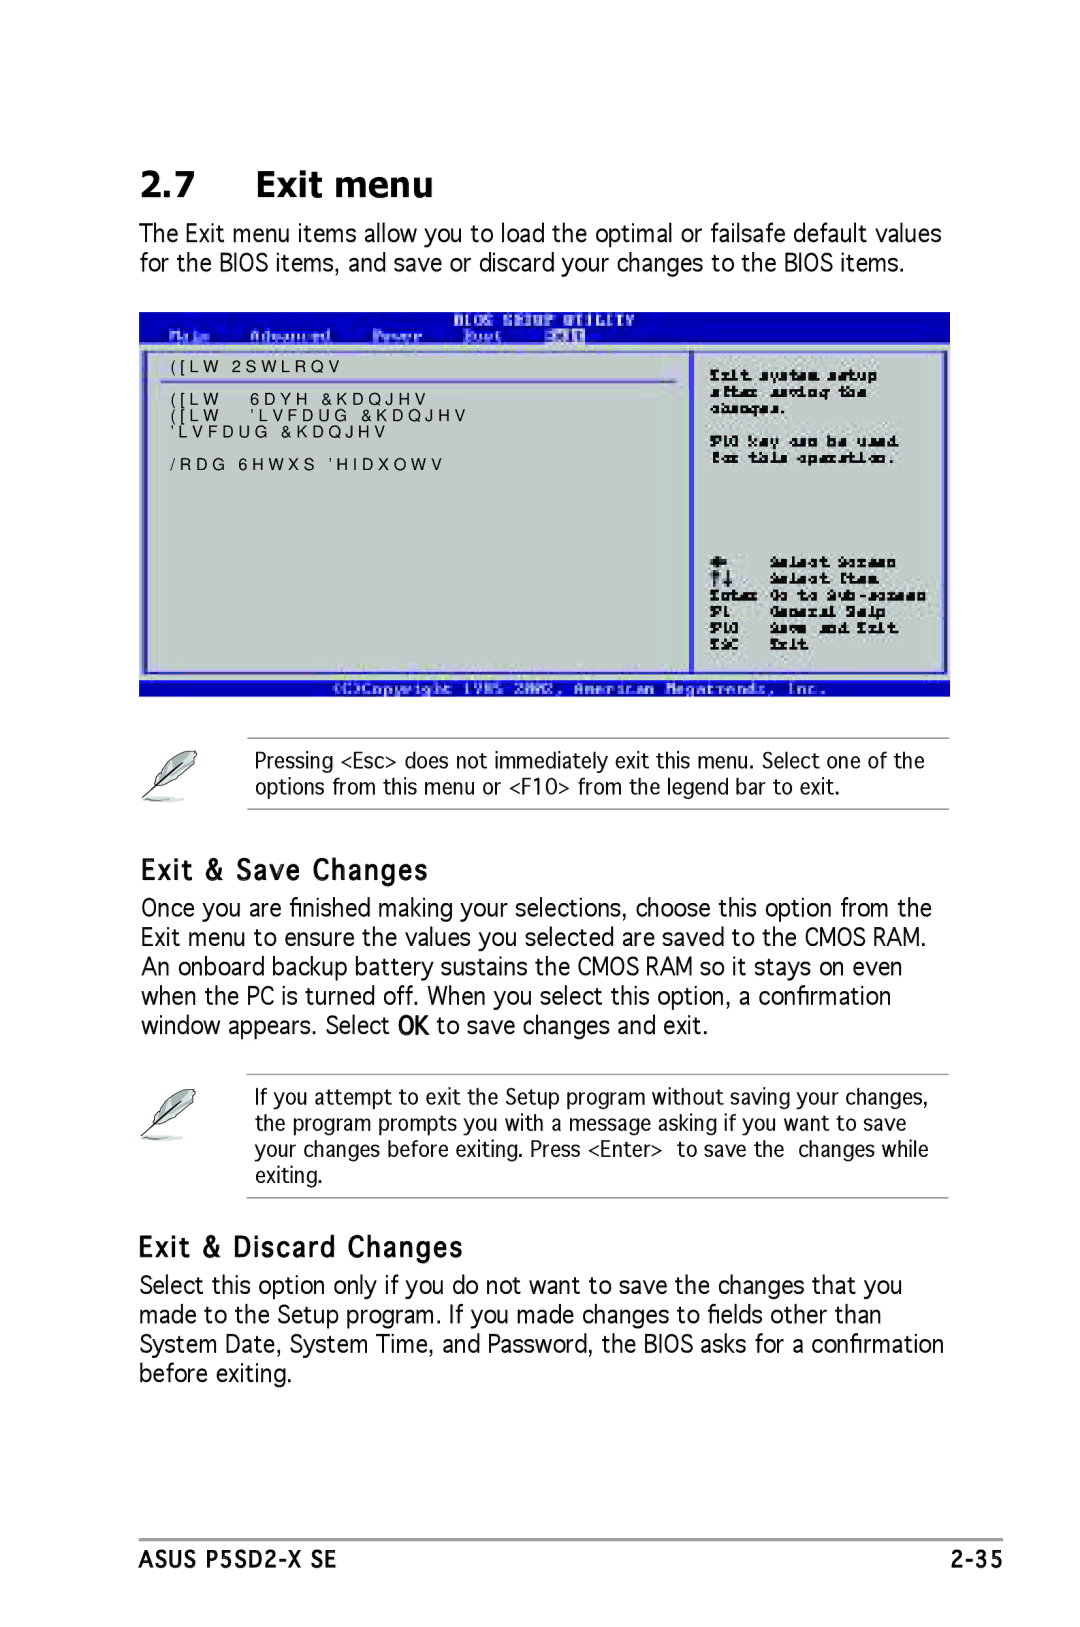 Asus P5SD2-X SE manual Exit menu, Exit & Save Changes, Exit & Discard Changes 